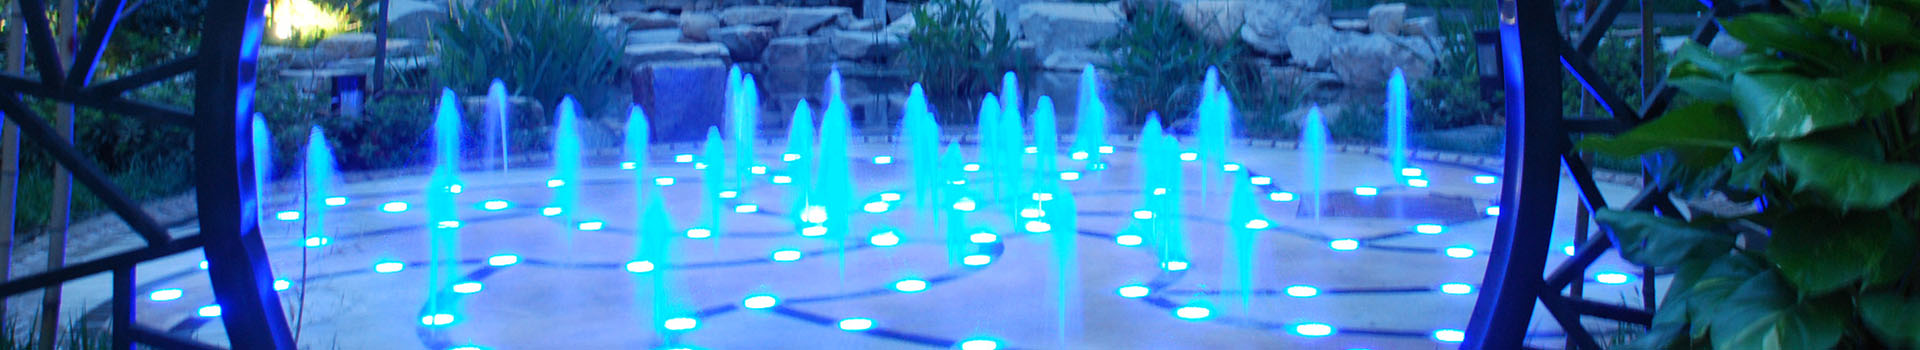 喷泉公司分析选择音乐喷泉彩灯时应考虑的因素